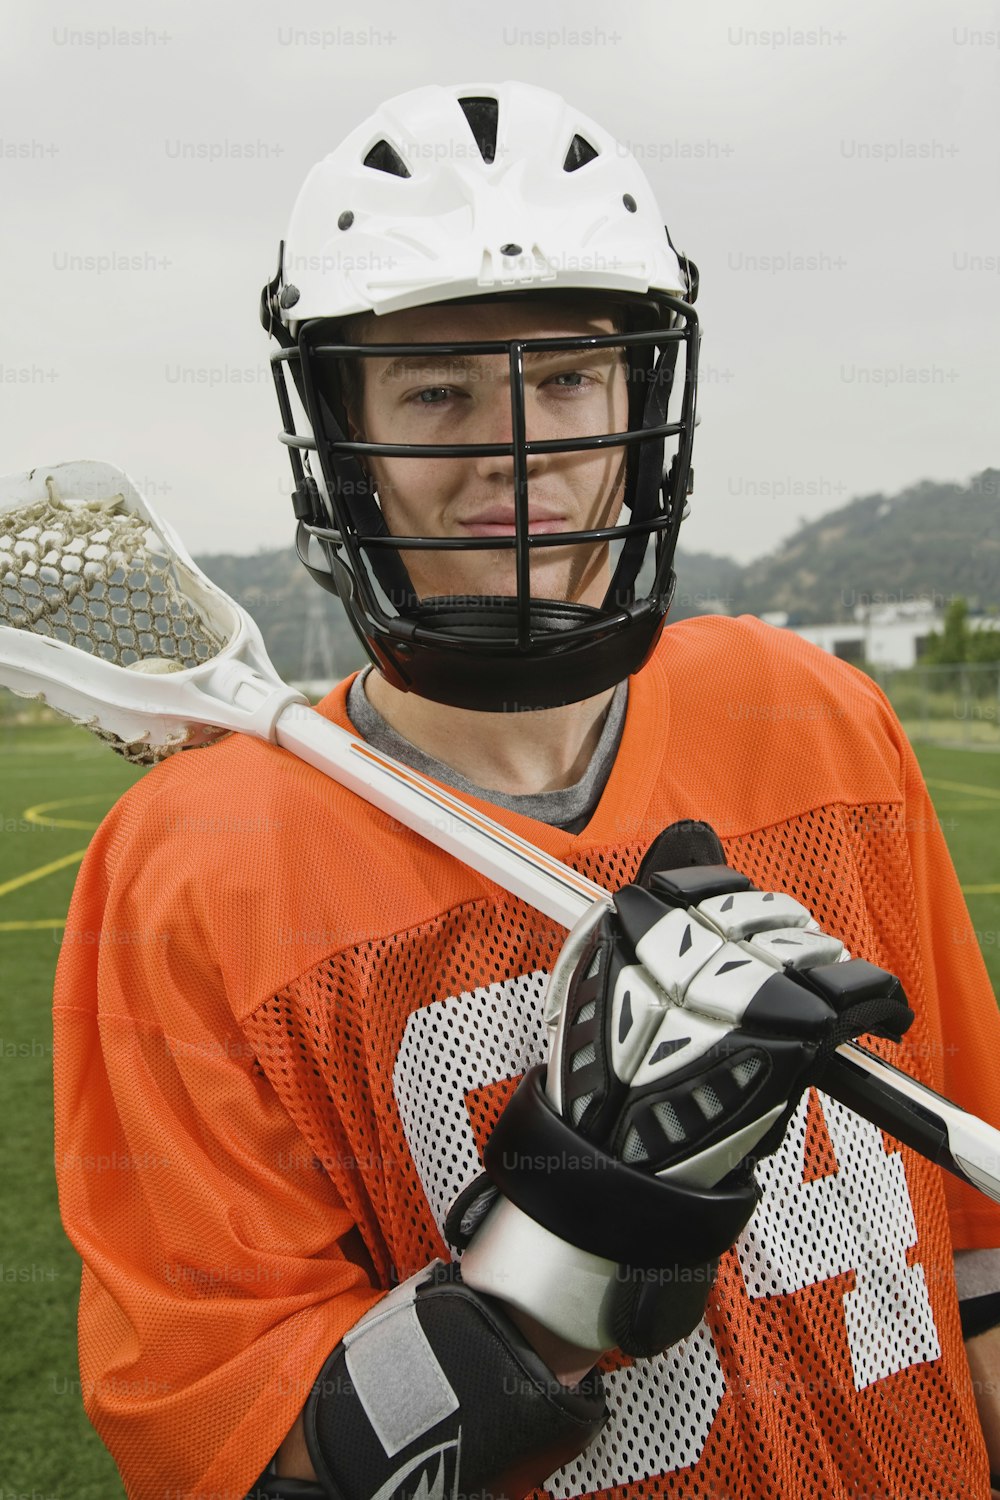 Un hombre con una camiseta naranja sosteniendo un palo de lacrosse